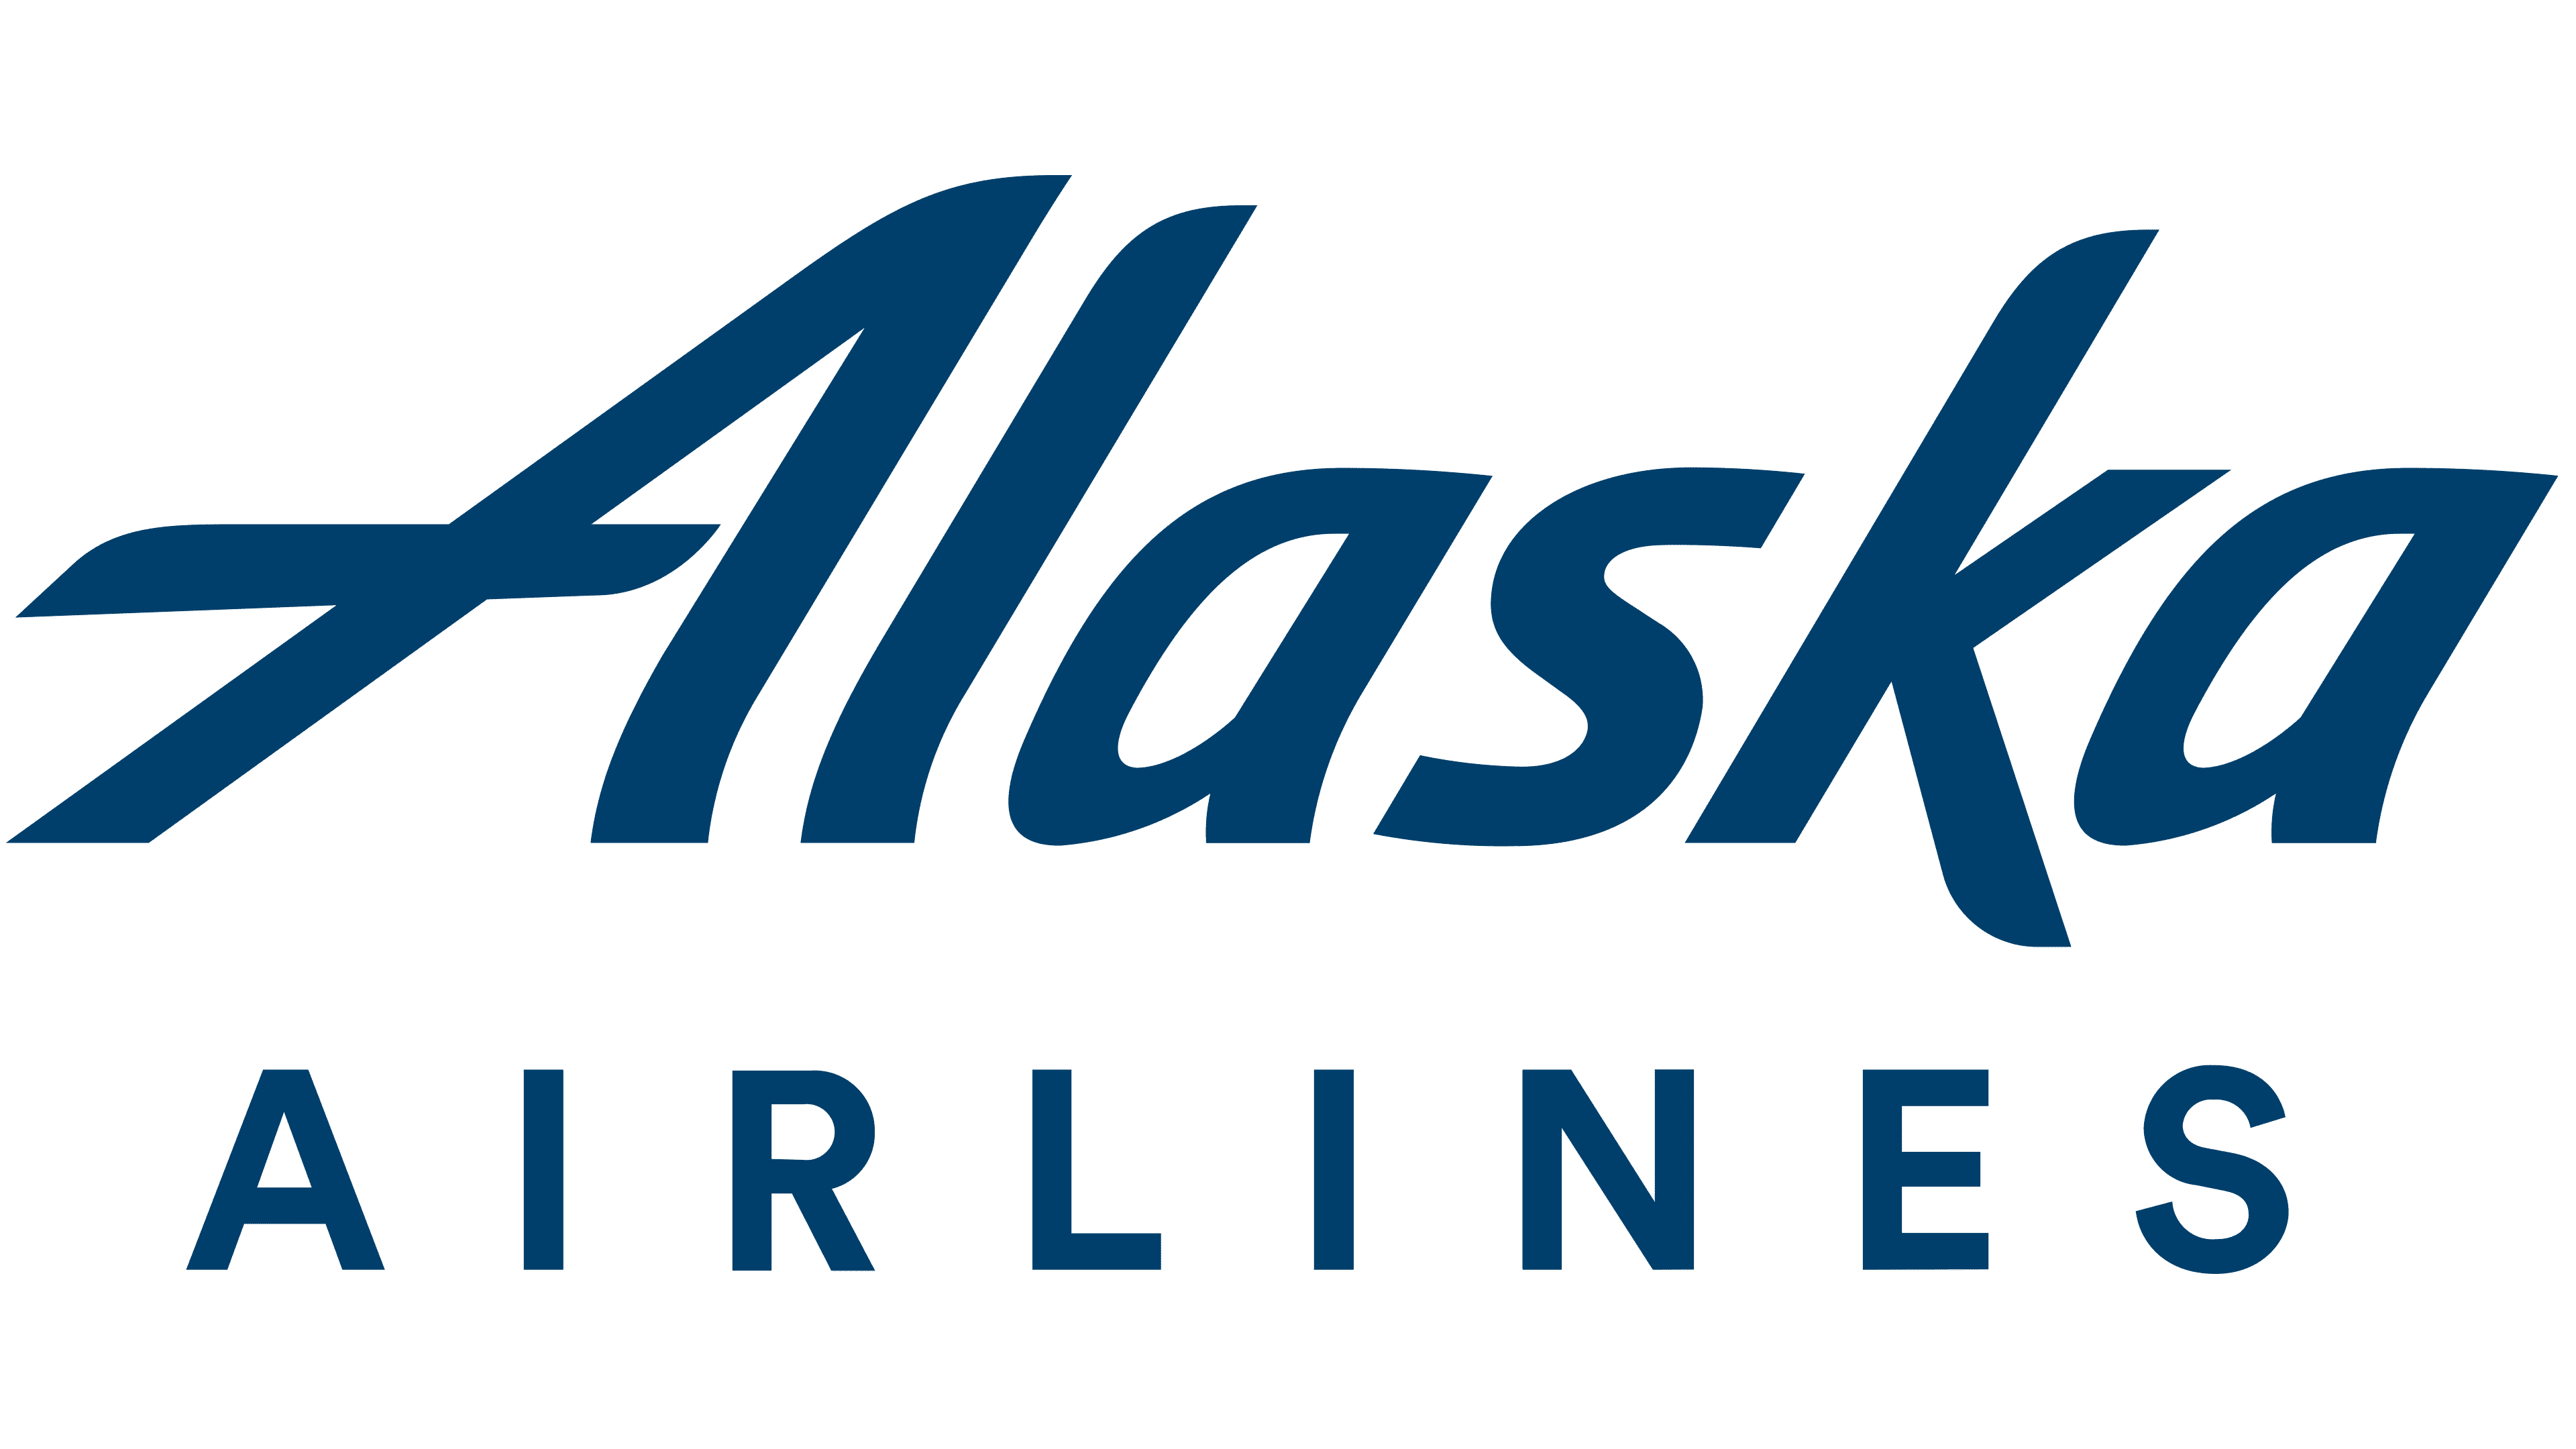 Alaska-Airlines-Logo